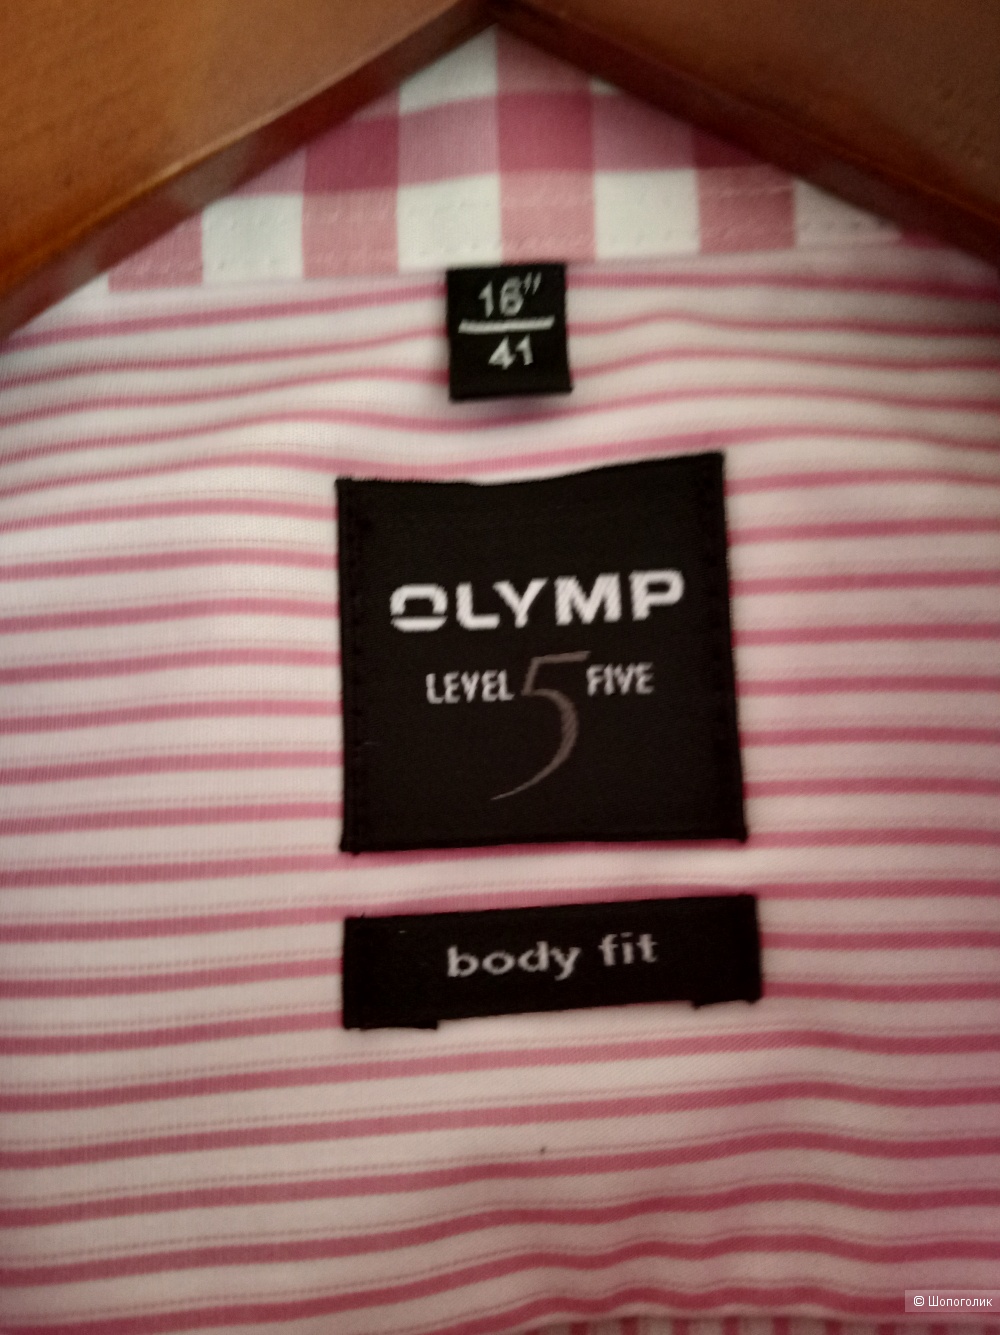 Рубашка Olymp Level Five, body fit, размер 16", 41